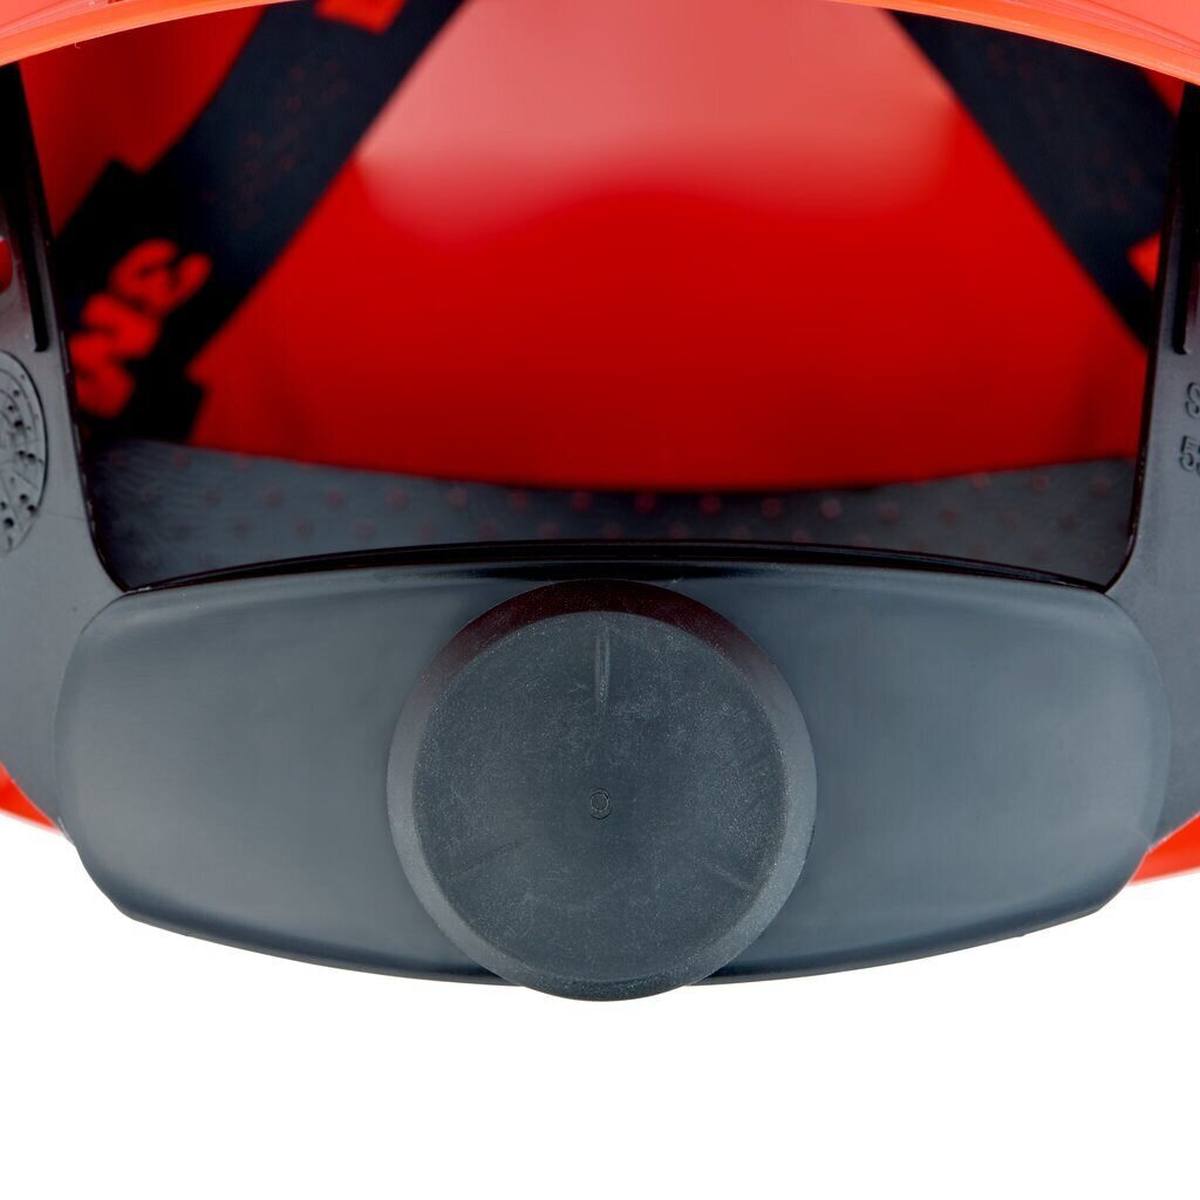 3M Casco de seguridad G3000 con indicador UV, rojo, ABS, cierre de trinquete ventilado, banda de sudor de plástico, pegatina reflectante